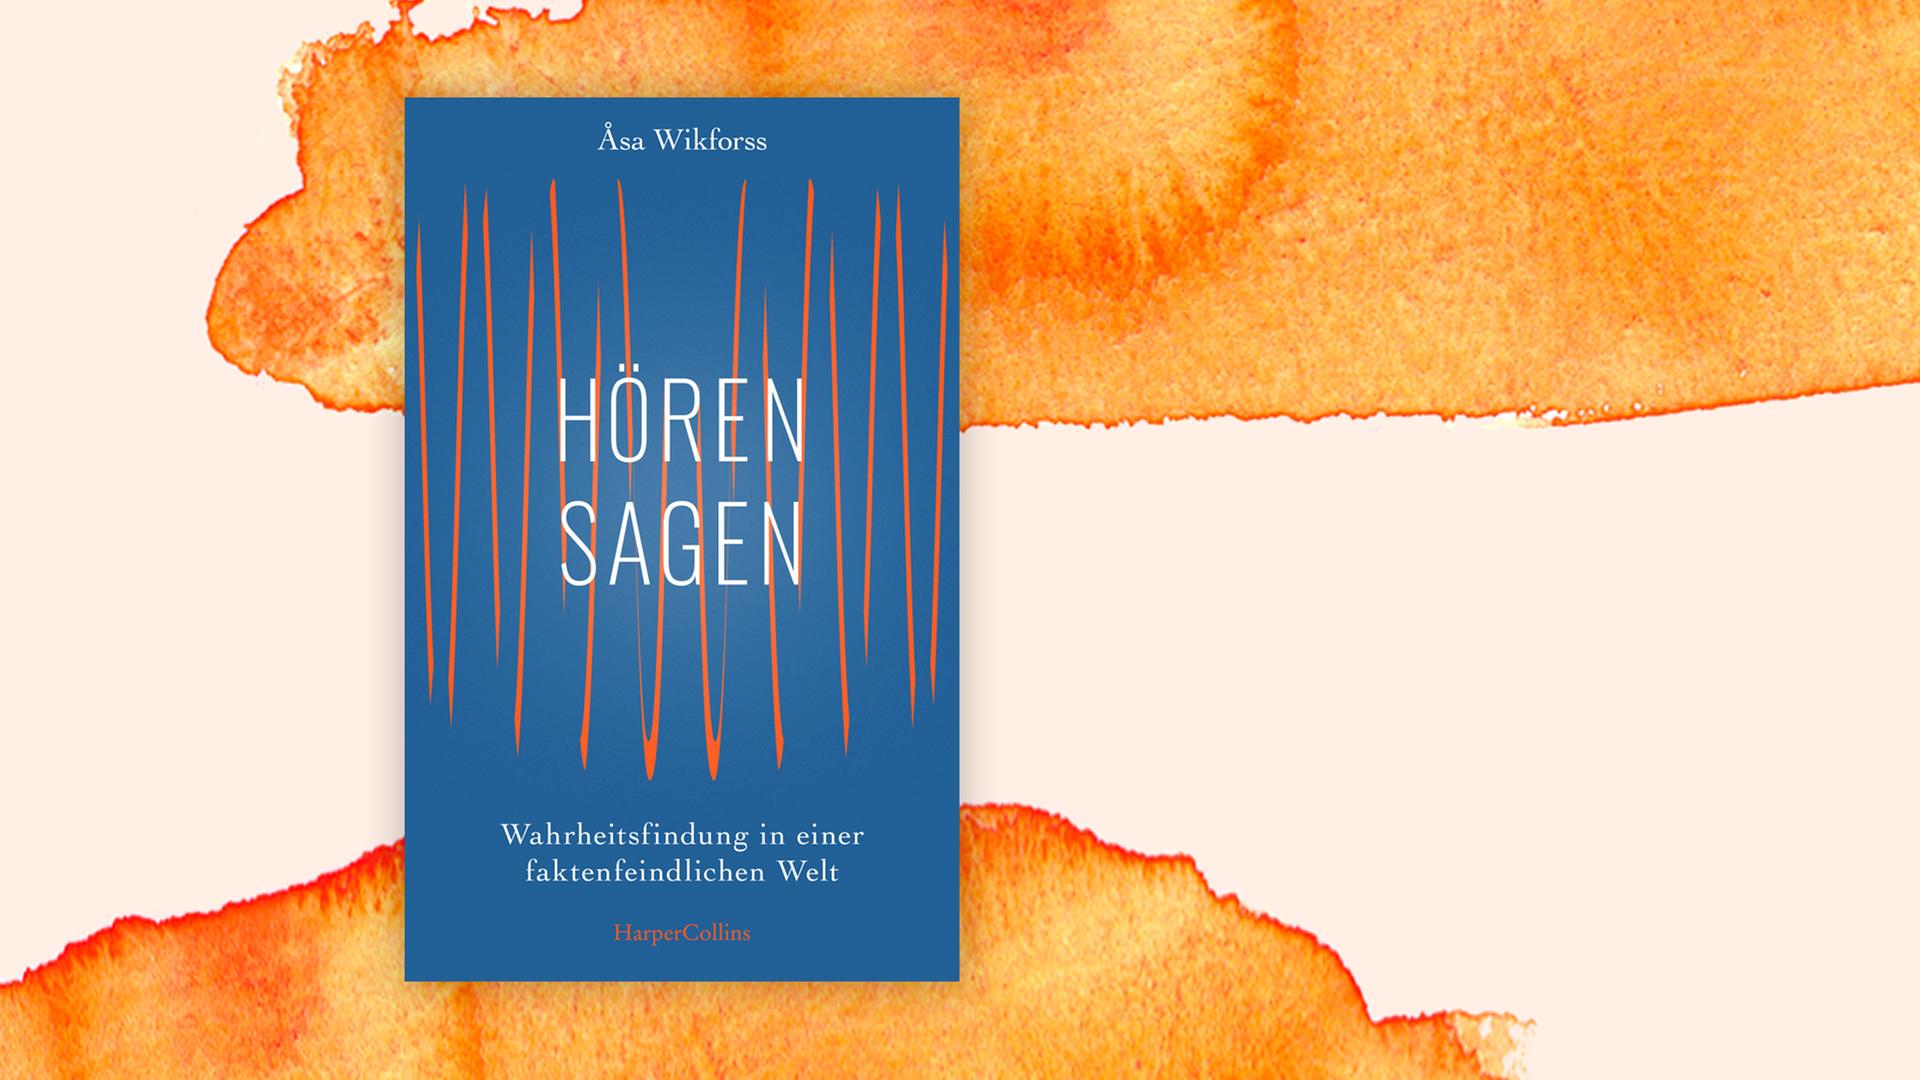 Das Buchcover "Hörensagen – Wahrheitsfindung in einer faktenfeindlichen Welt" von Åsa Wikforssist vor einem grafischen Hintergrund zu sehen.